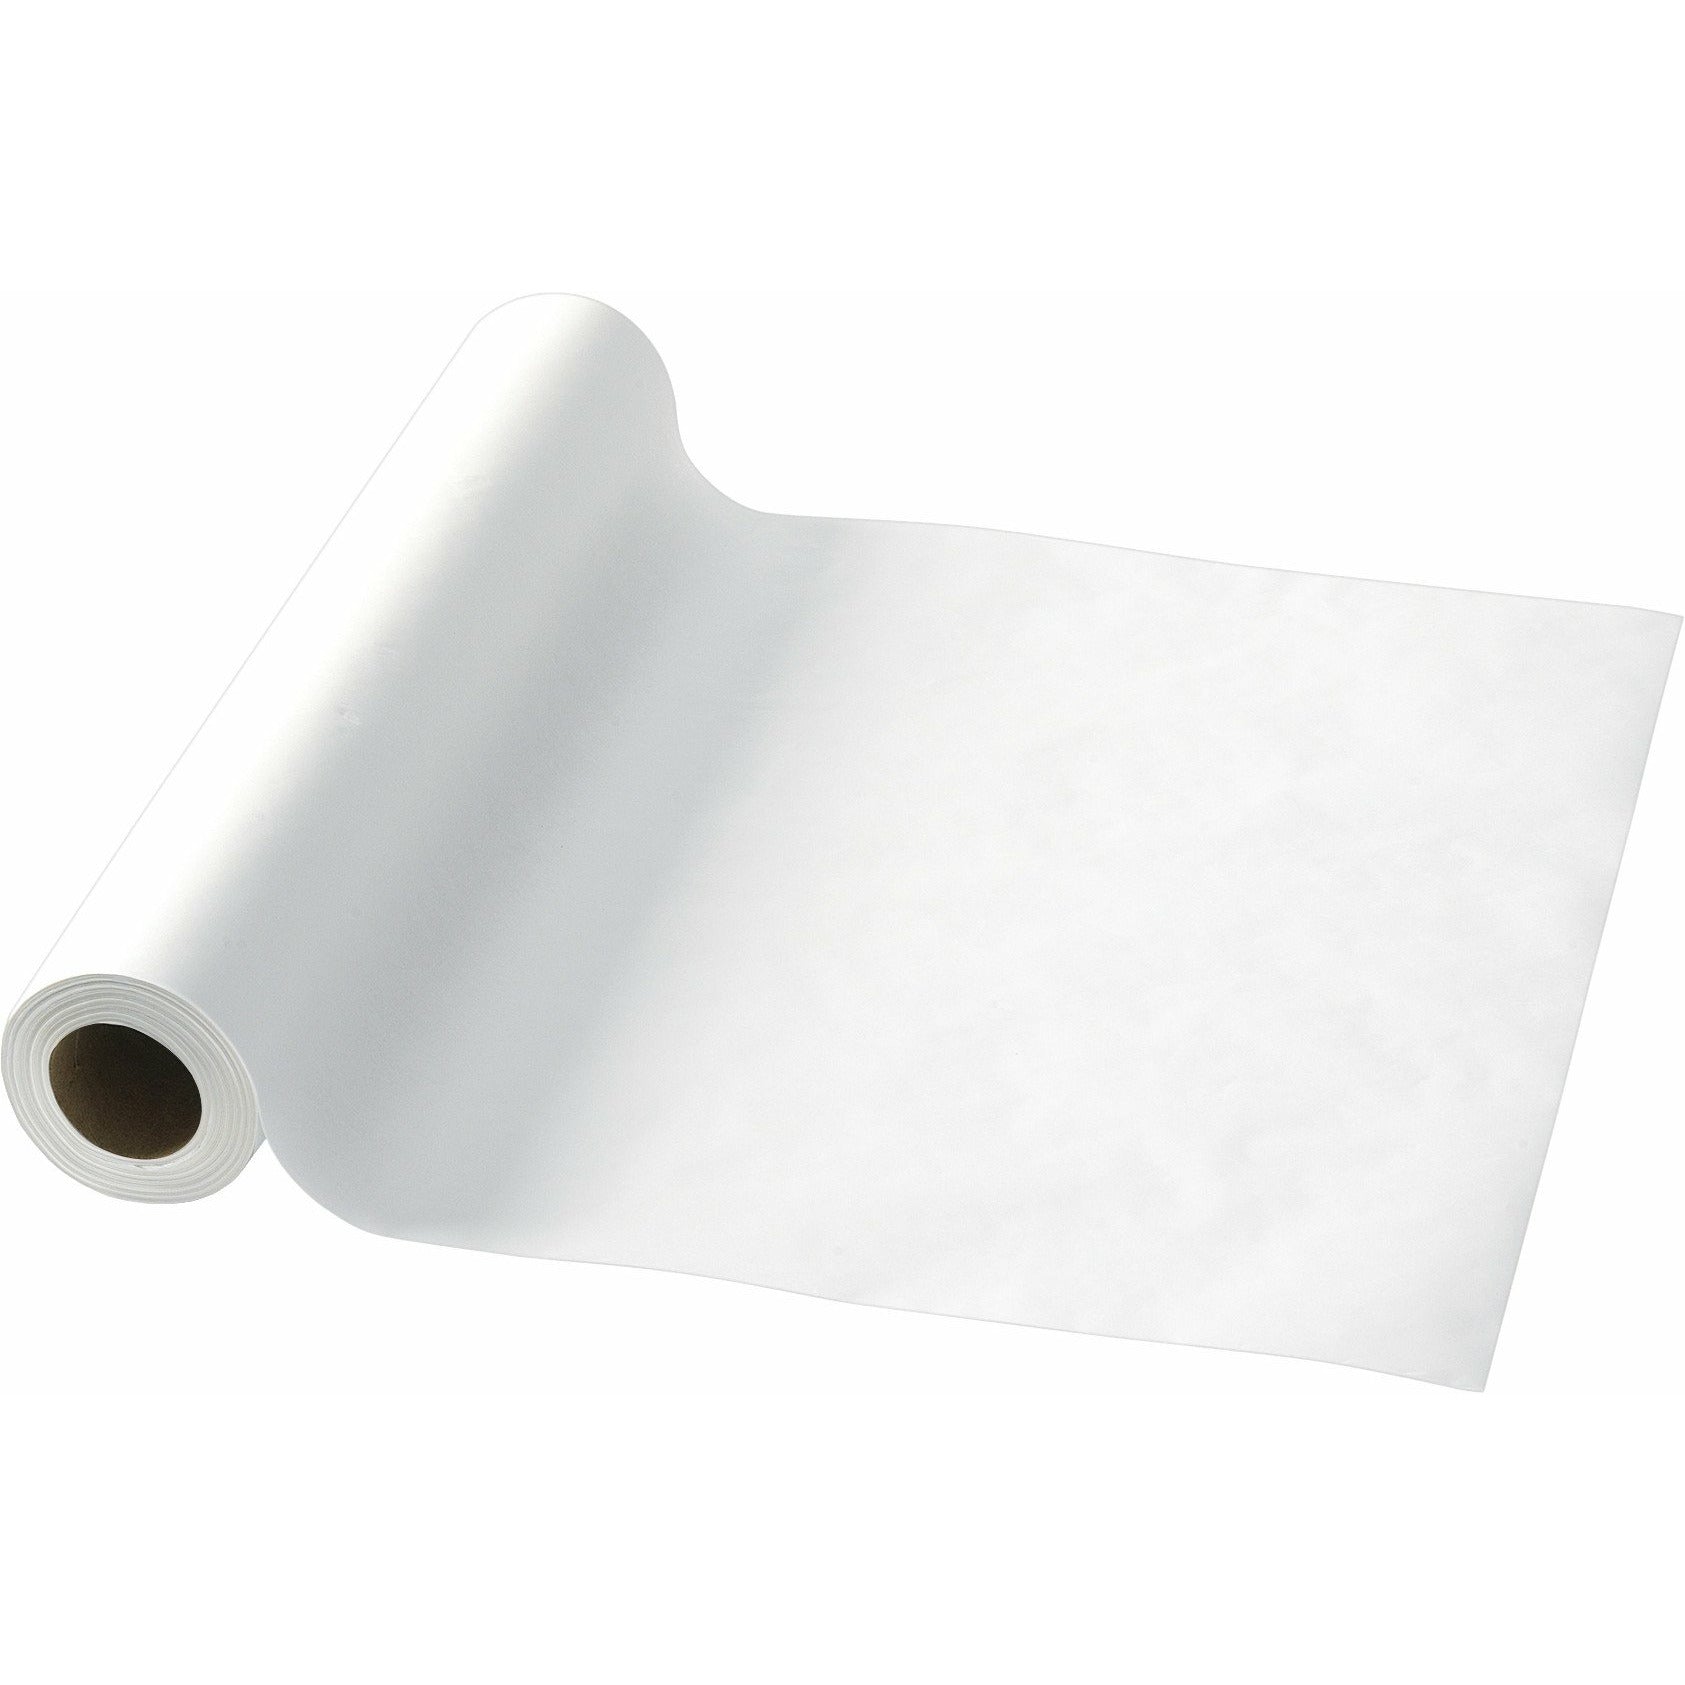 Sanitary Paper Roll, 14-1/2"W x 215'L